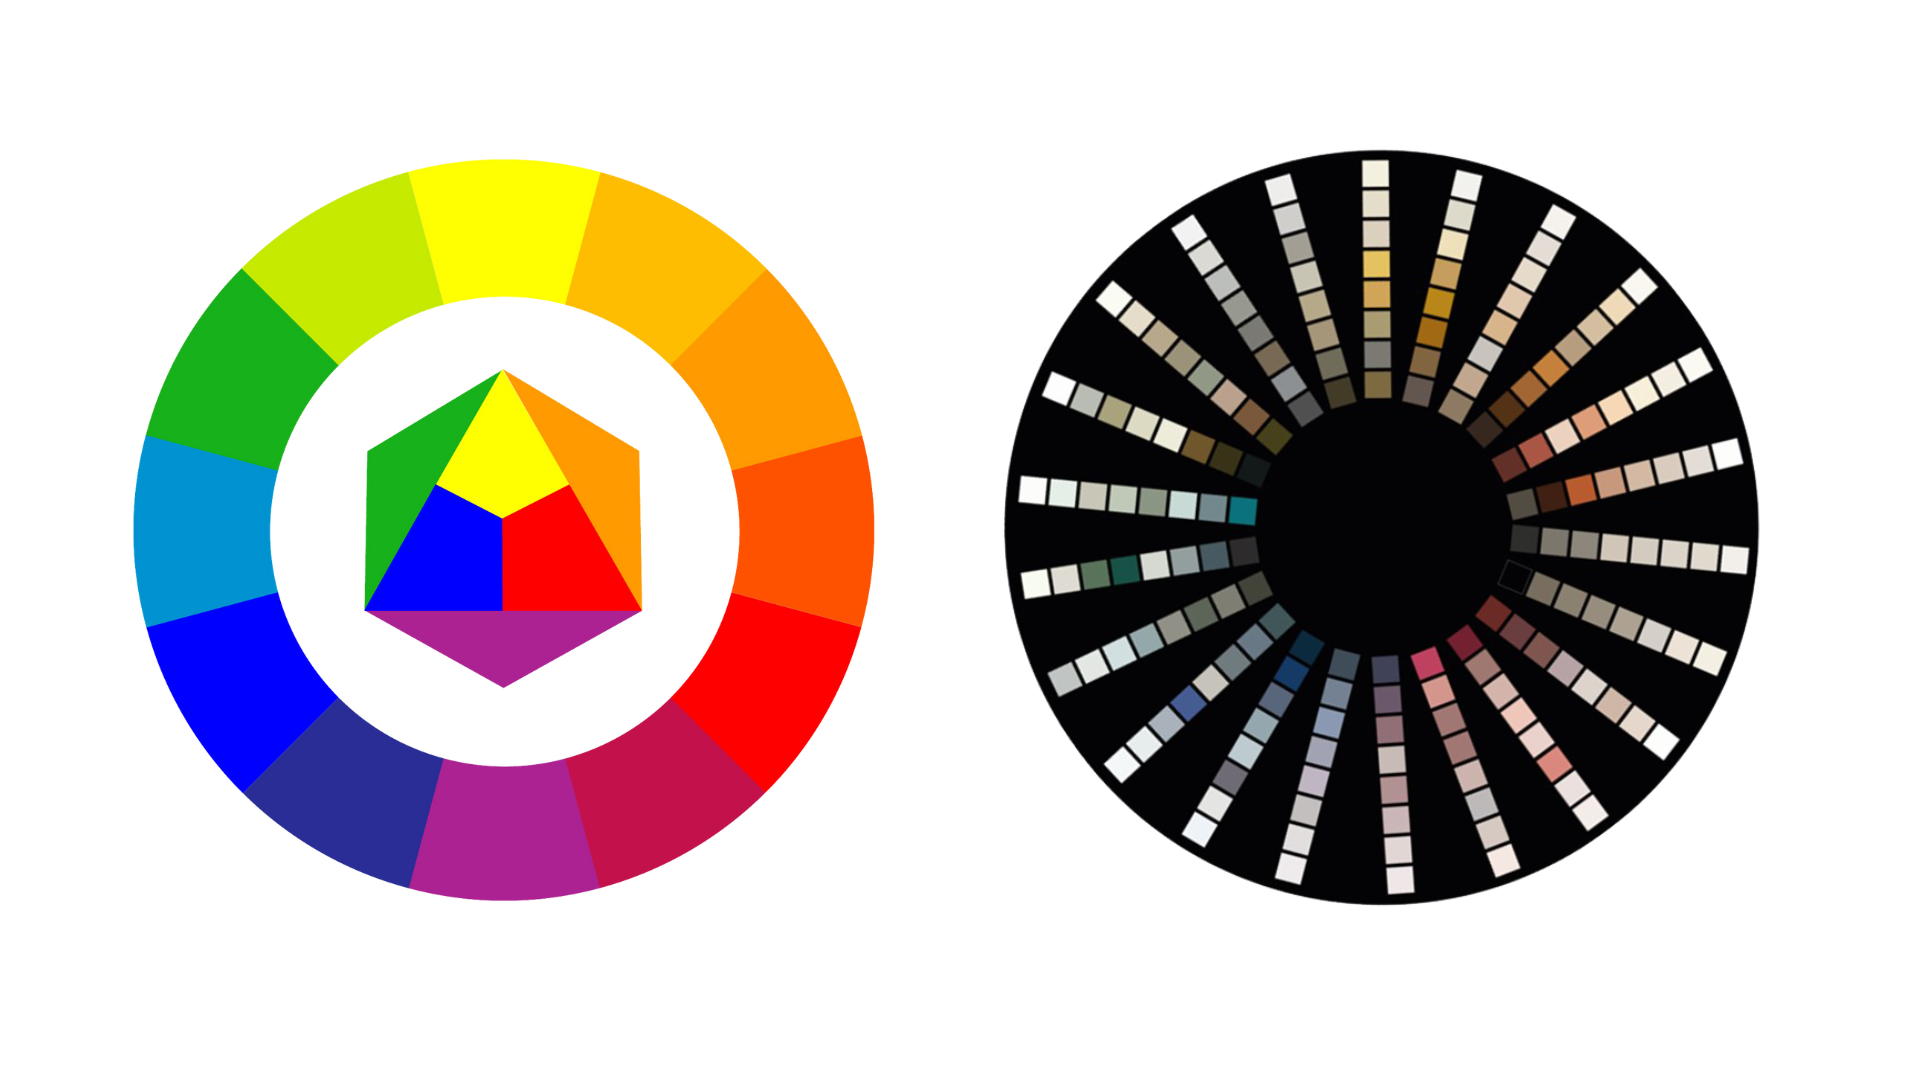 Kleurencirkel van Itten en de daarop geïnspireerde LAB Kleurencirkel